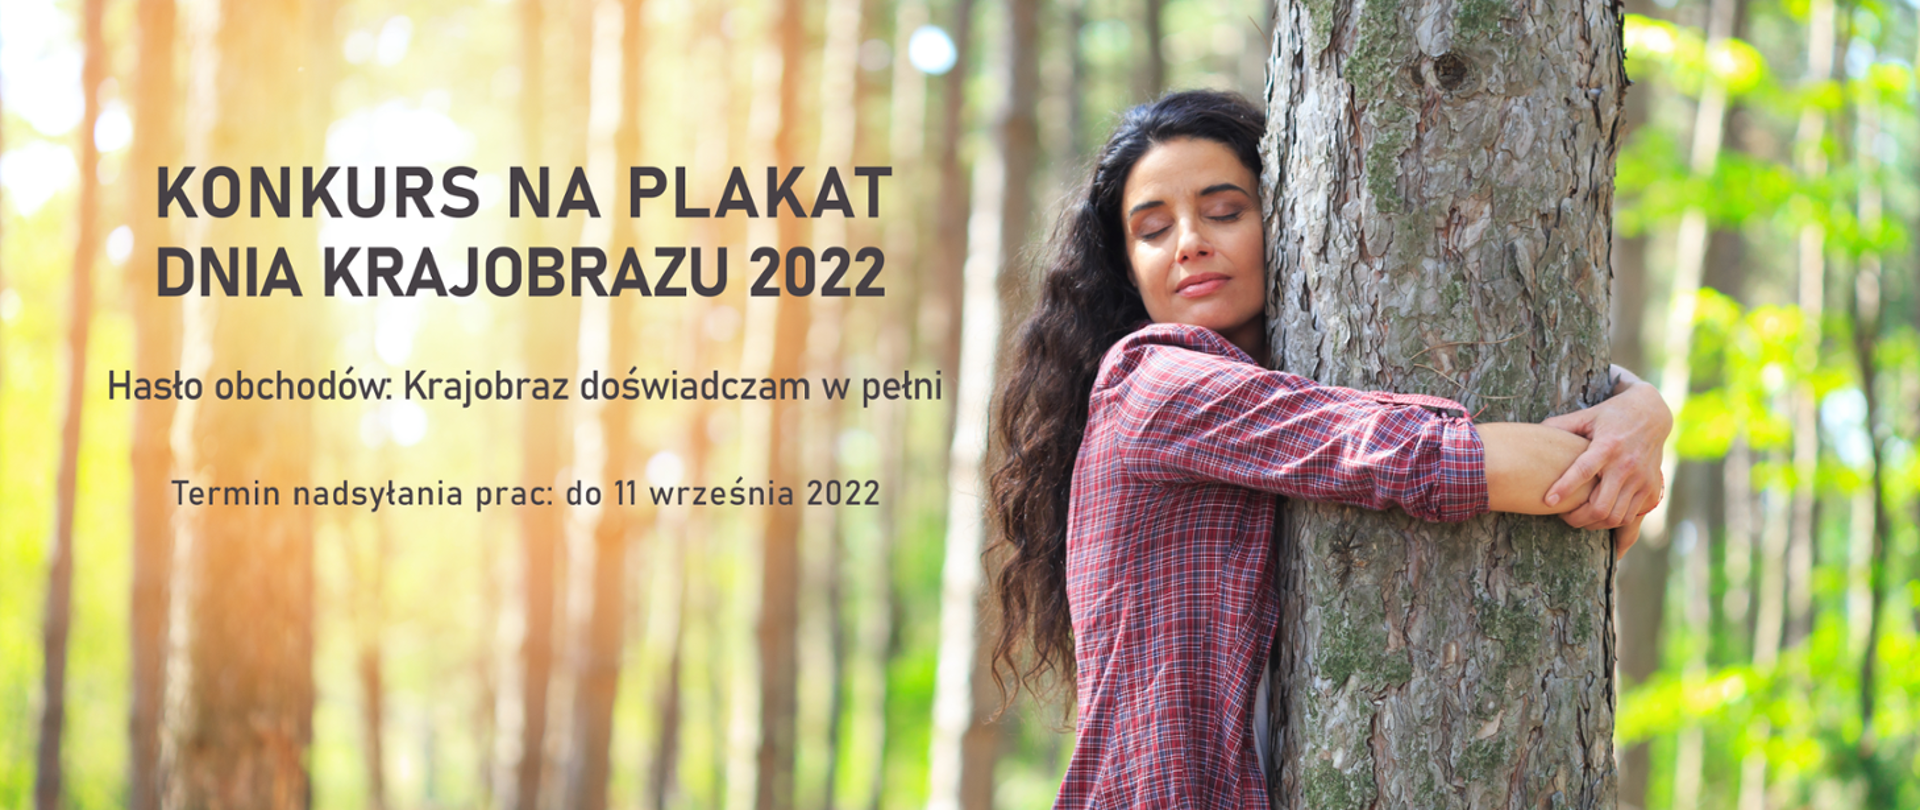 Konkurs na plakat z okazji dnia krajobrazu 2022